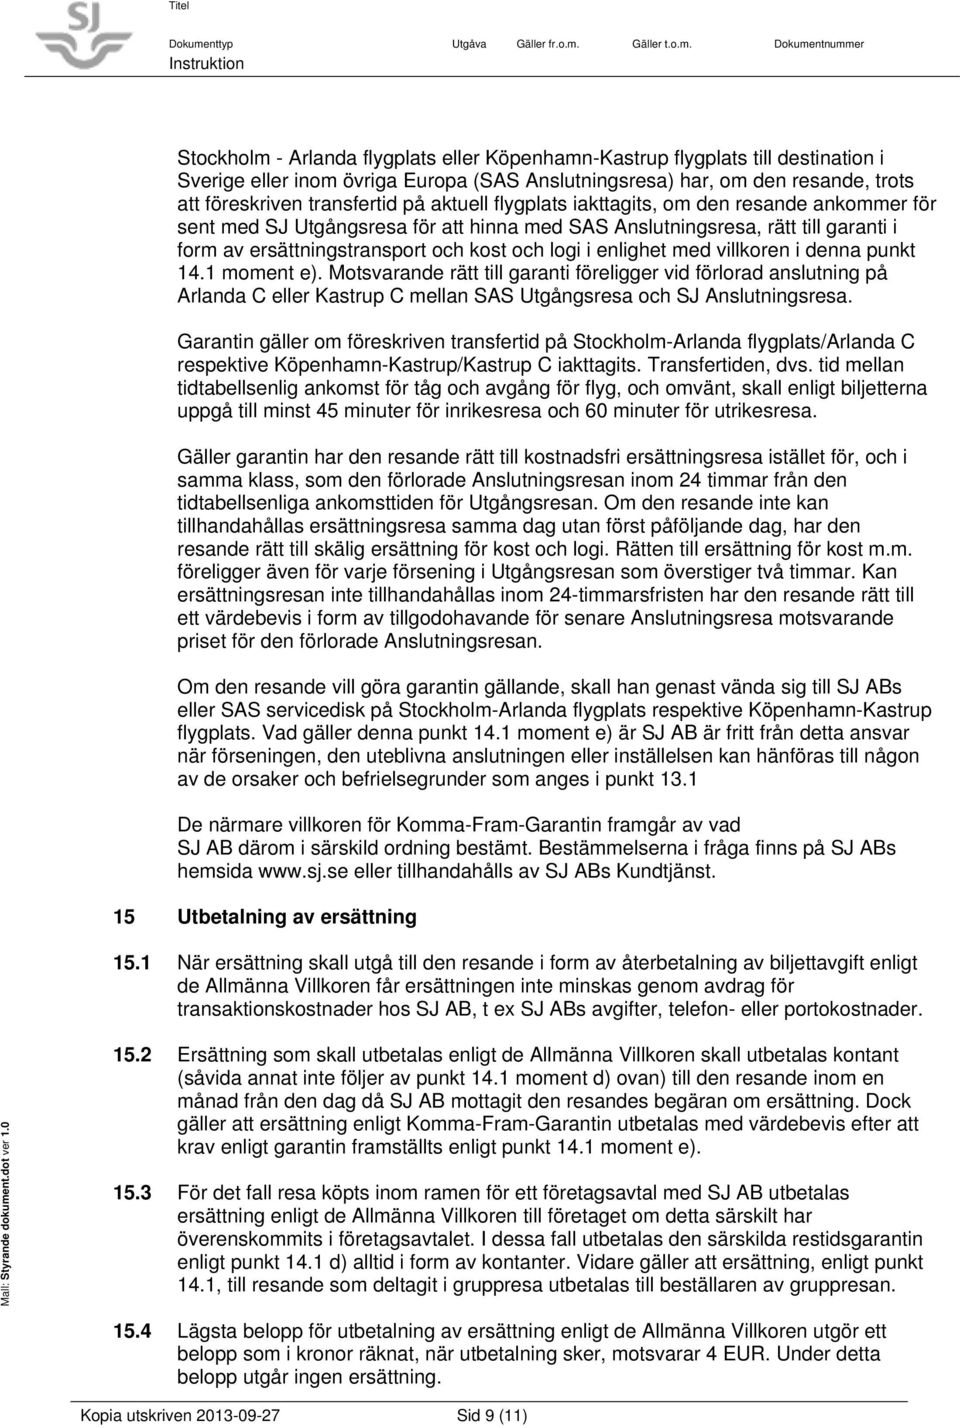 med villkoren i denna punkt 14.1 moment e). Motsvarande rätt till garanti föreligger vid förlorad anslutning på Arlanda C eller Kastrup C mellan SAS Utgångsresa och SJ Anslutningsresa.